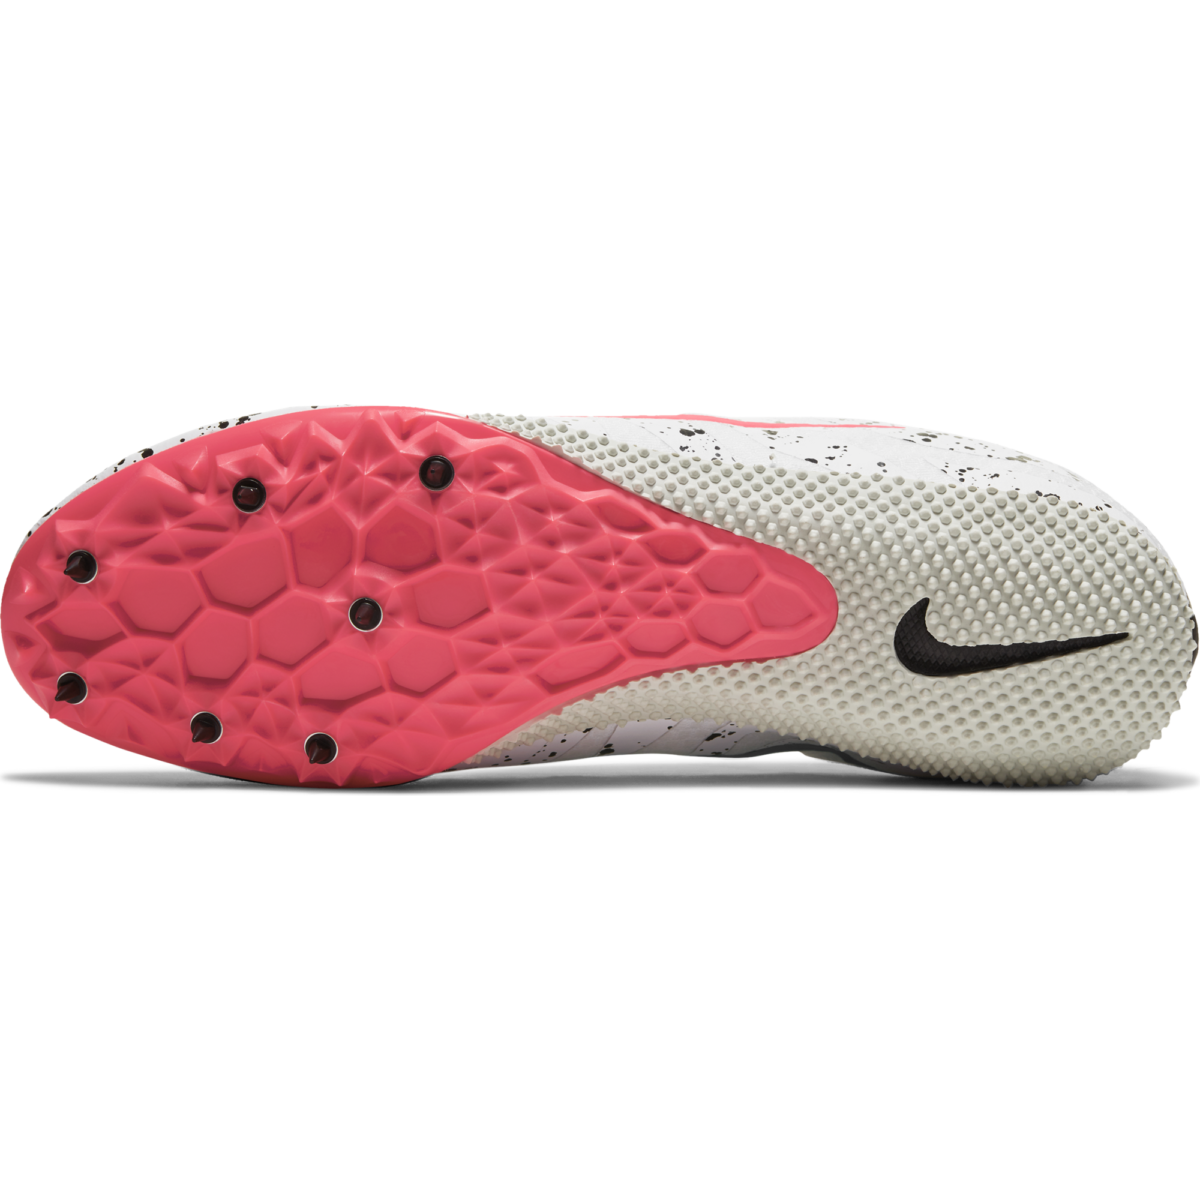 Zapatillas de atletismo unisex - Nike Zoom Rival S 9 - 907564-002